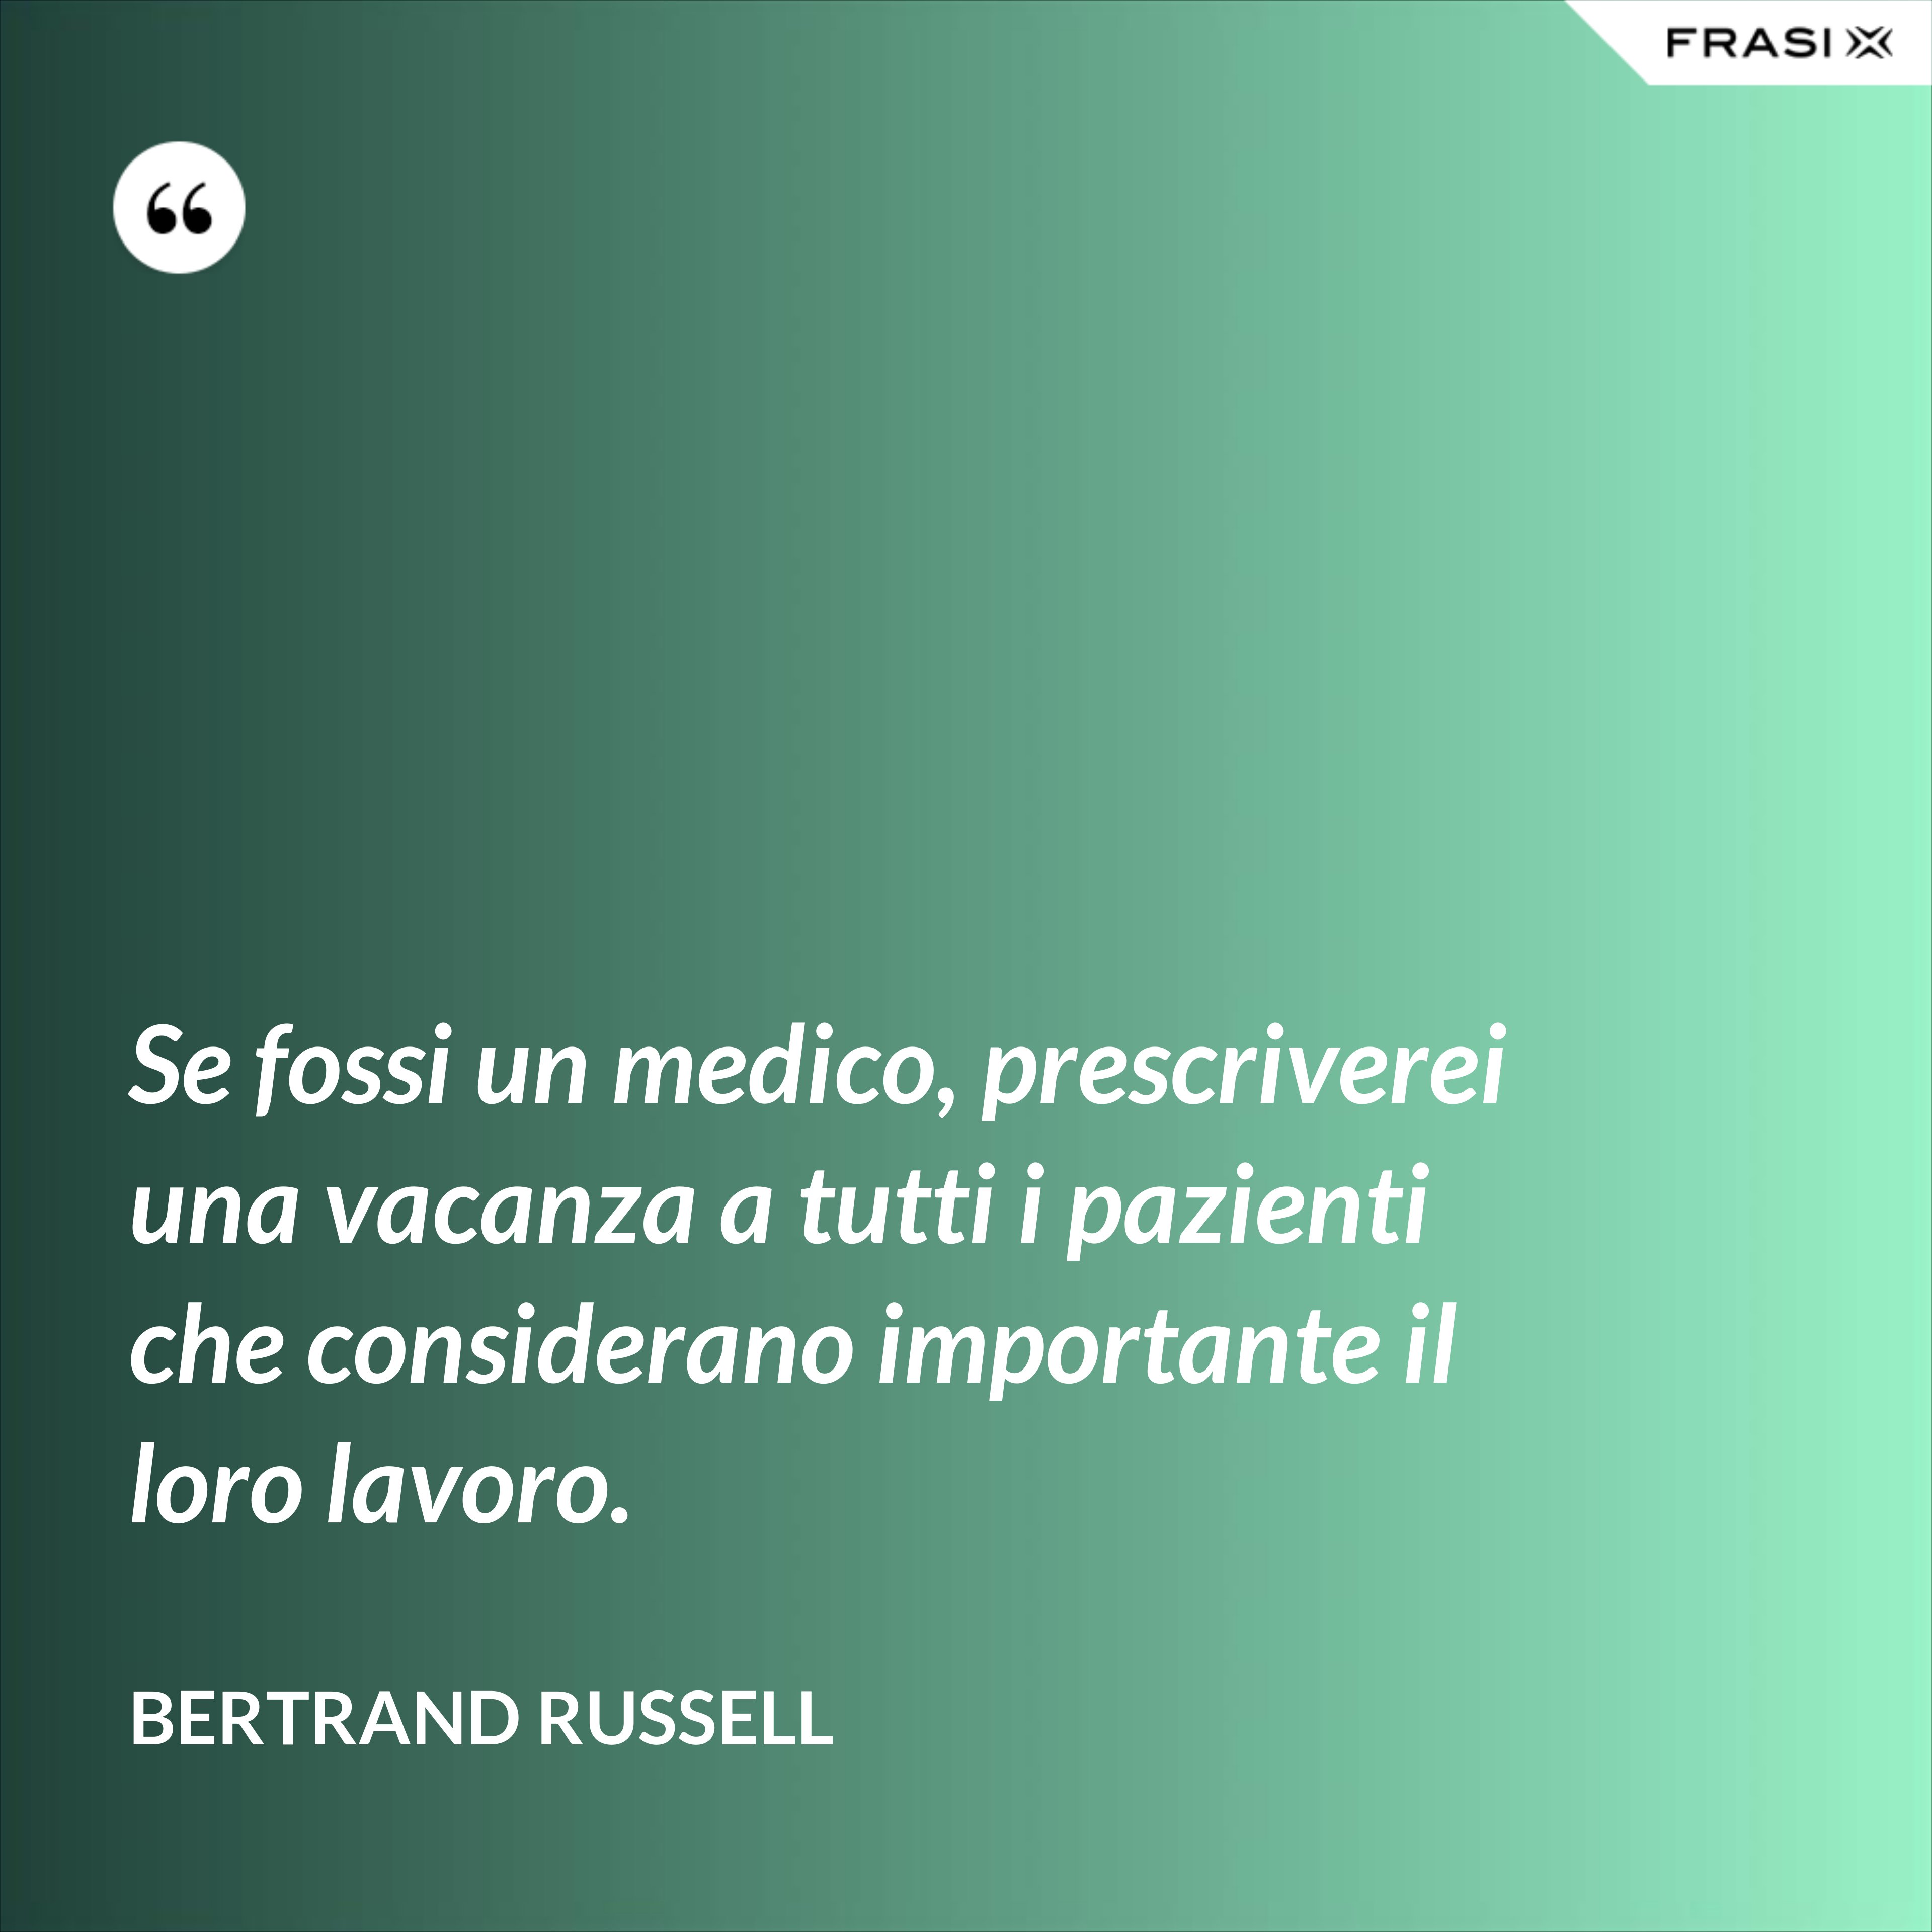 Se fossi un medico, prescriverei una vacanza a tutti i pazienti che considerano importante il loro lavoro. - Bertrand Russell